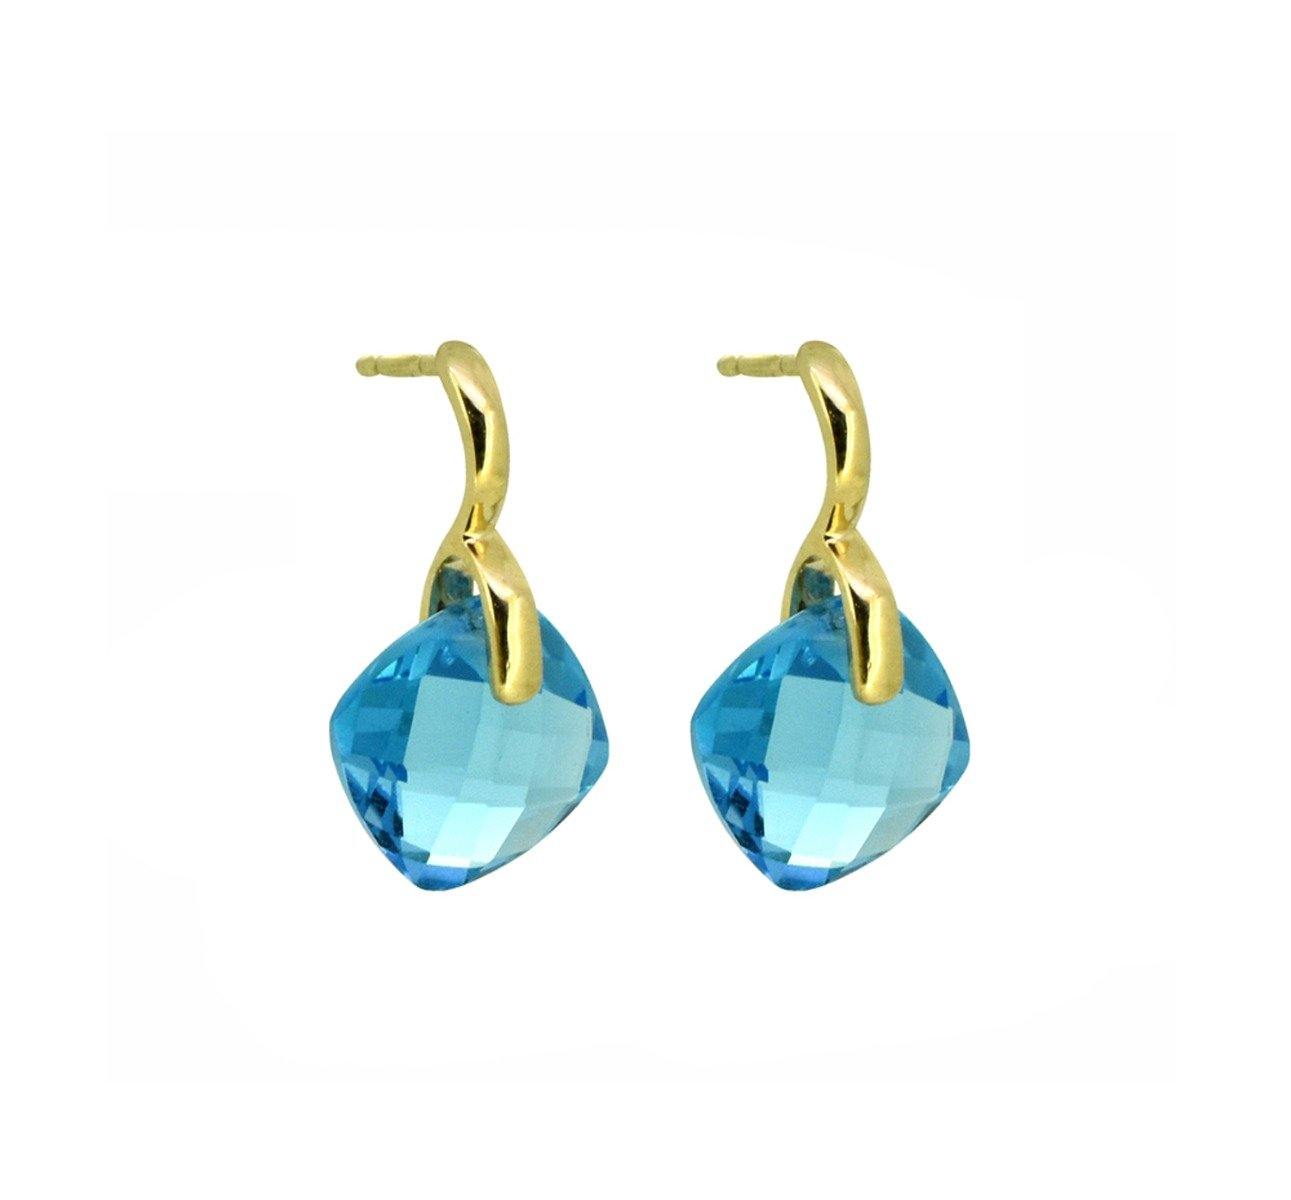 3.98 Ct. Swiss Blue Topaz 14K Yellow Gold Drop Earrings Jewelry - YoTreasure